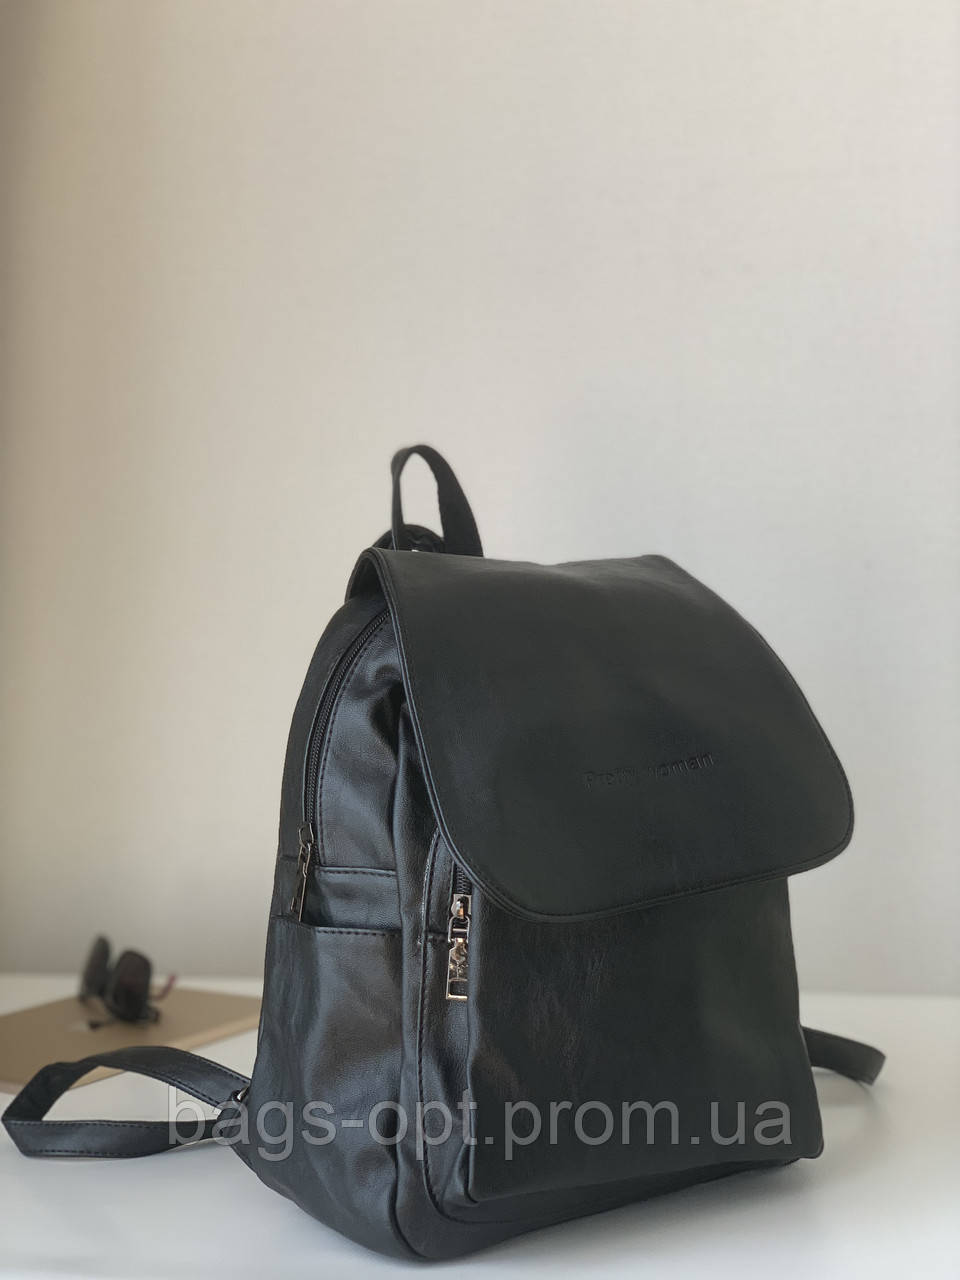 Сумка рюкзак чорного кольору Pretty Woman, фото 1